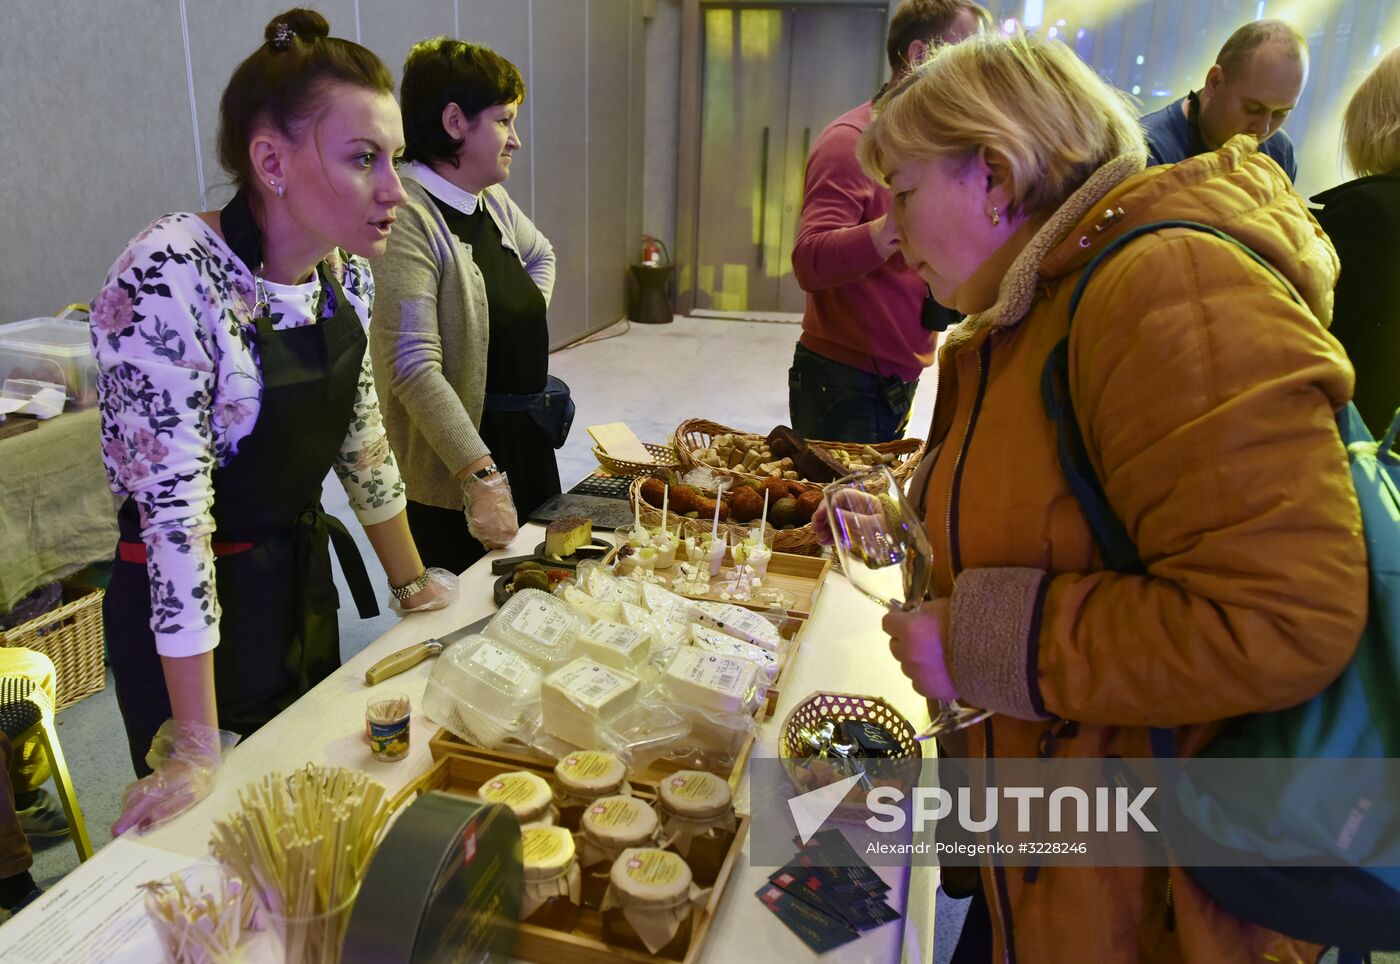 NovemberFest gastronomy festival in Crimea